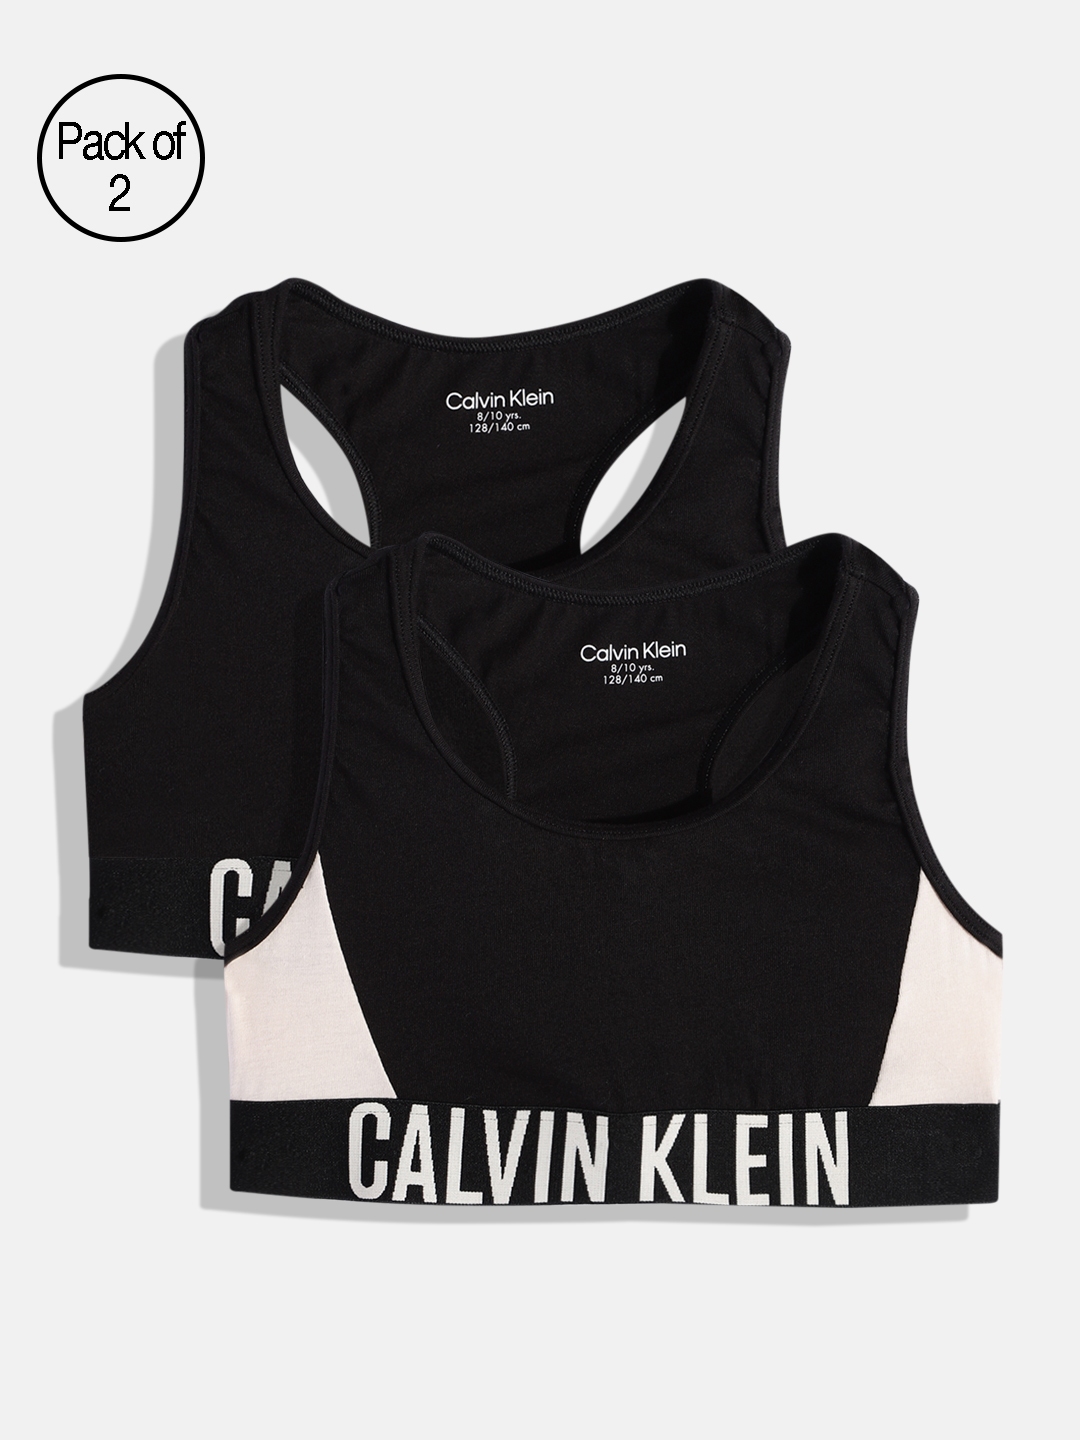 Calvin Klein Underwear Black & White Bralette Bra